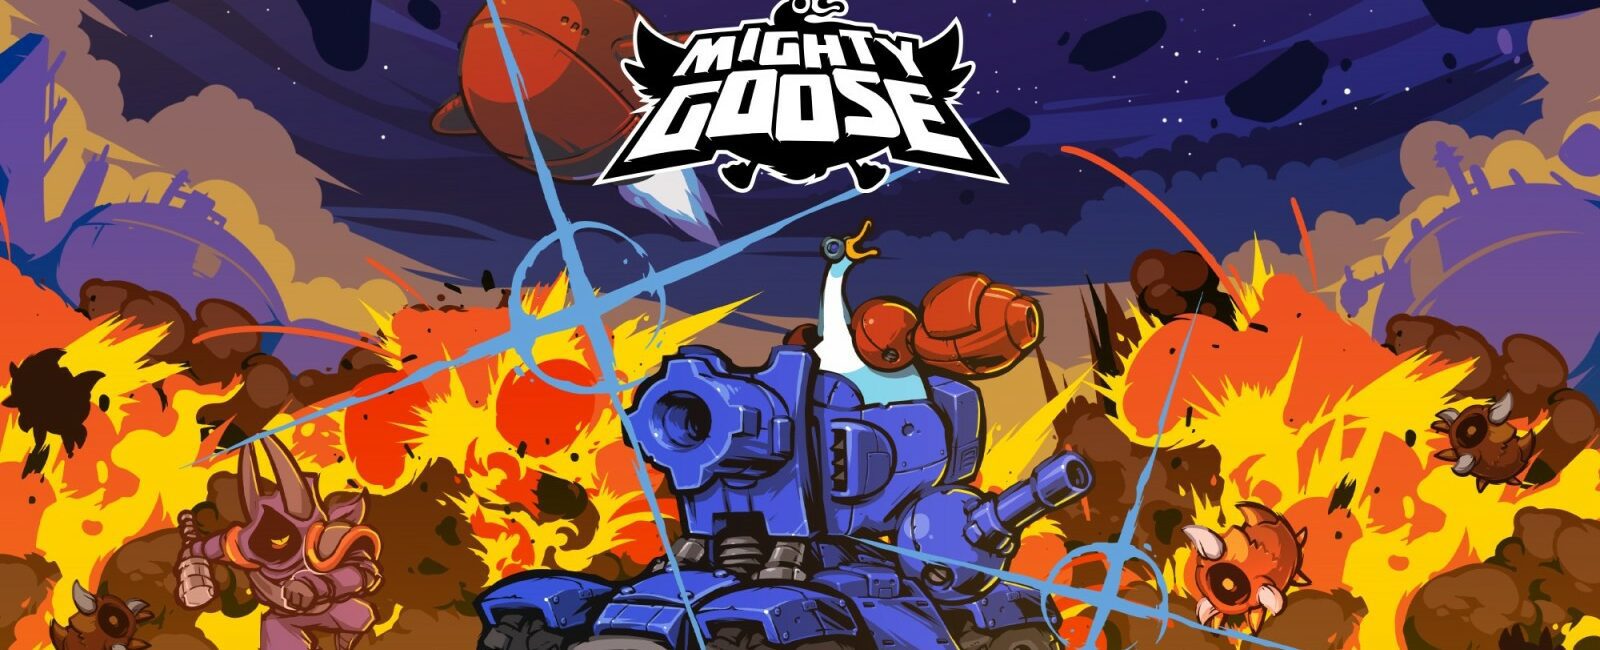 mighty goose unlockables